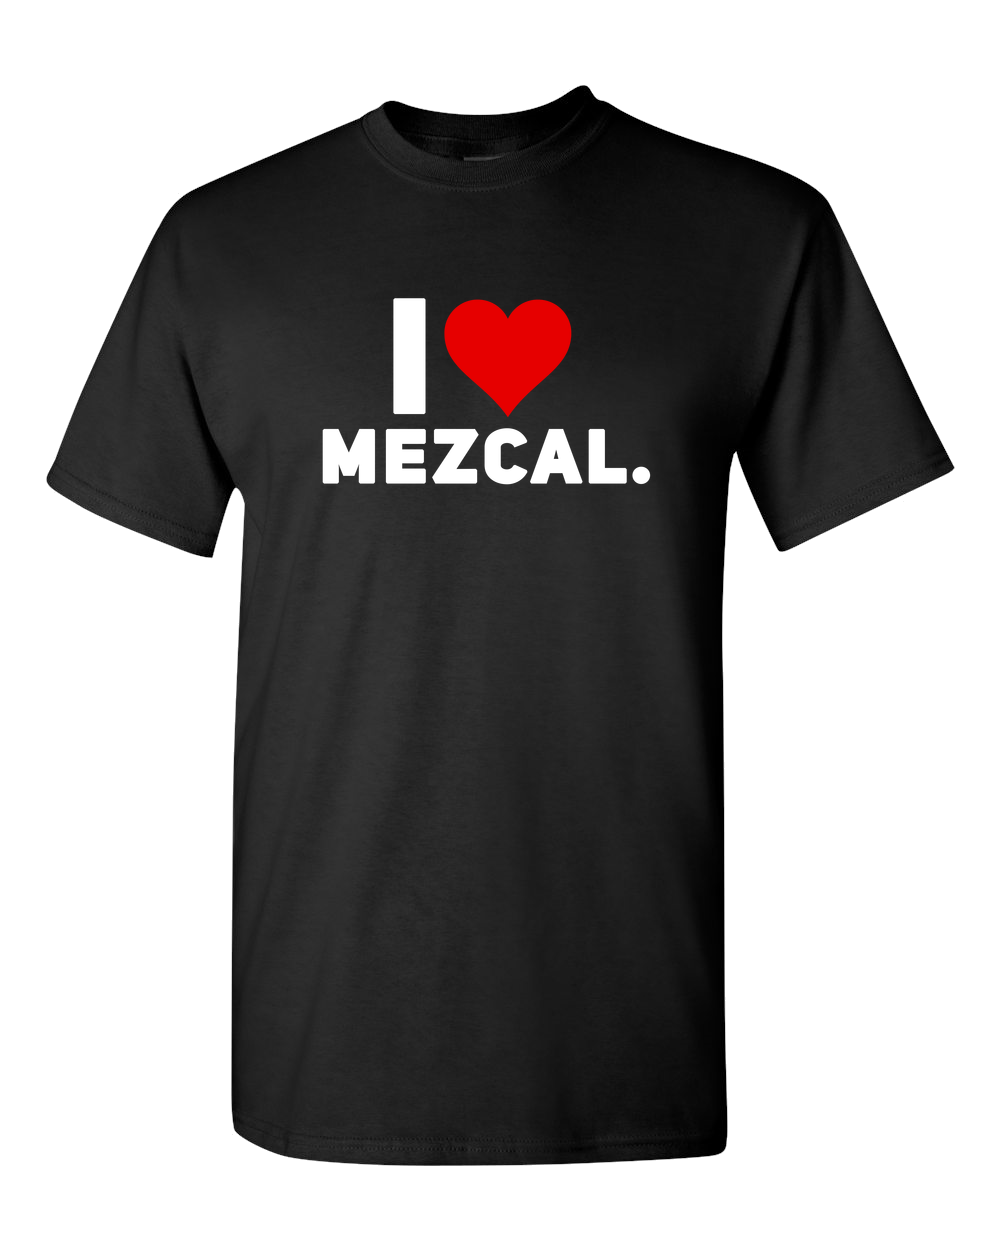 I Love Mezcal Adult Unisex Funny T-Shirt